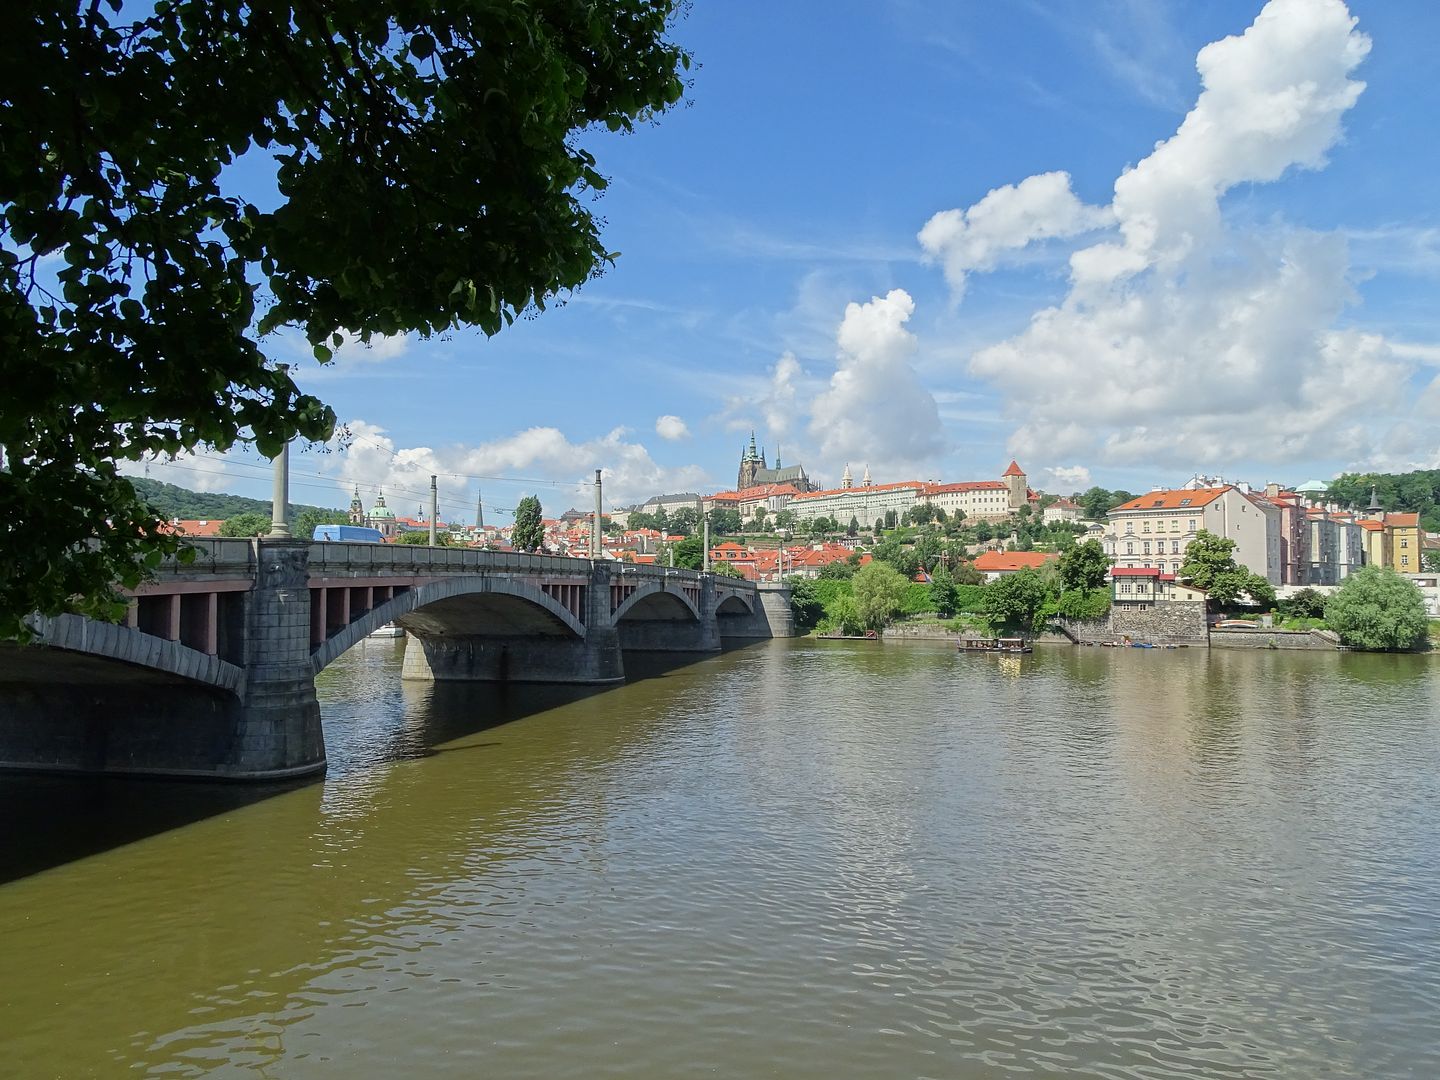 7 días en Praga con escursiones a Dresde (Alemania),Karlovy Vary y Terezin (E.C) - Blogs of Czech Republic - Día 3: Viernes 1 de Julio de 2016 (14)